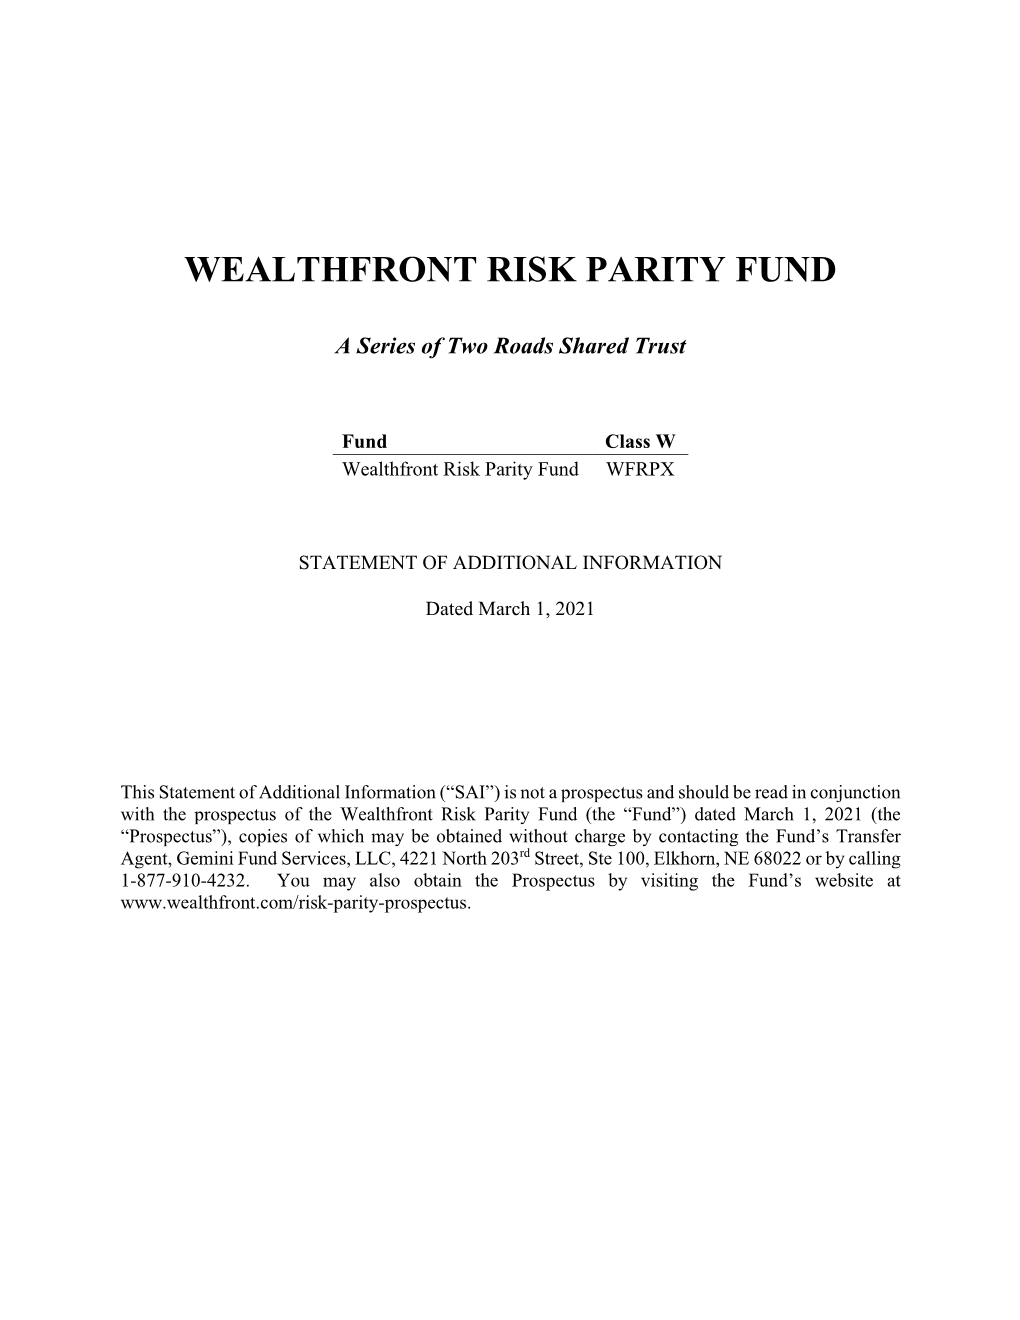 Wealthfront Risk Parity Fund